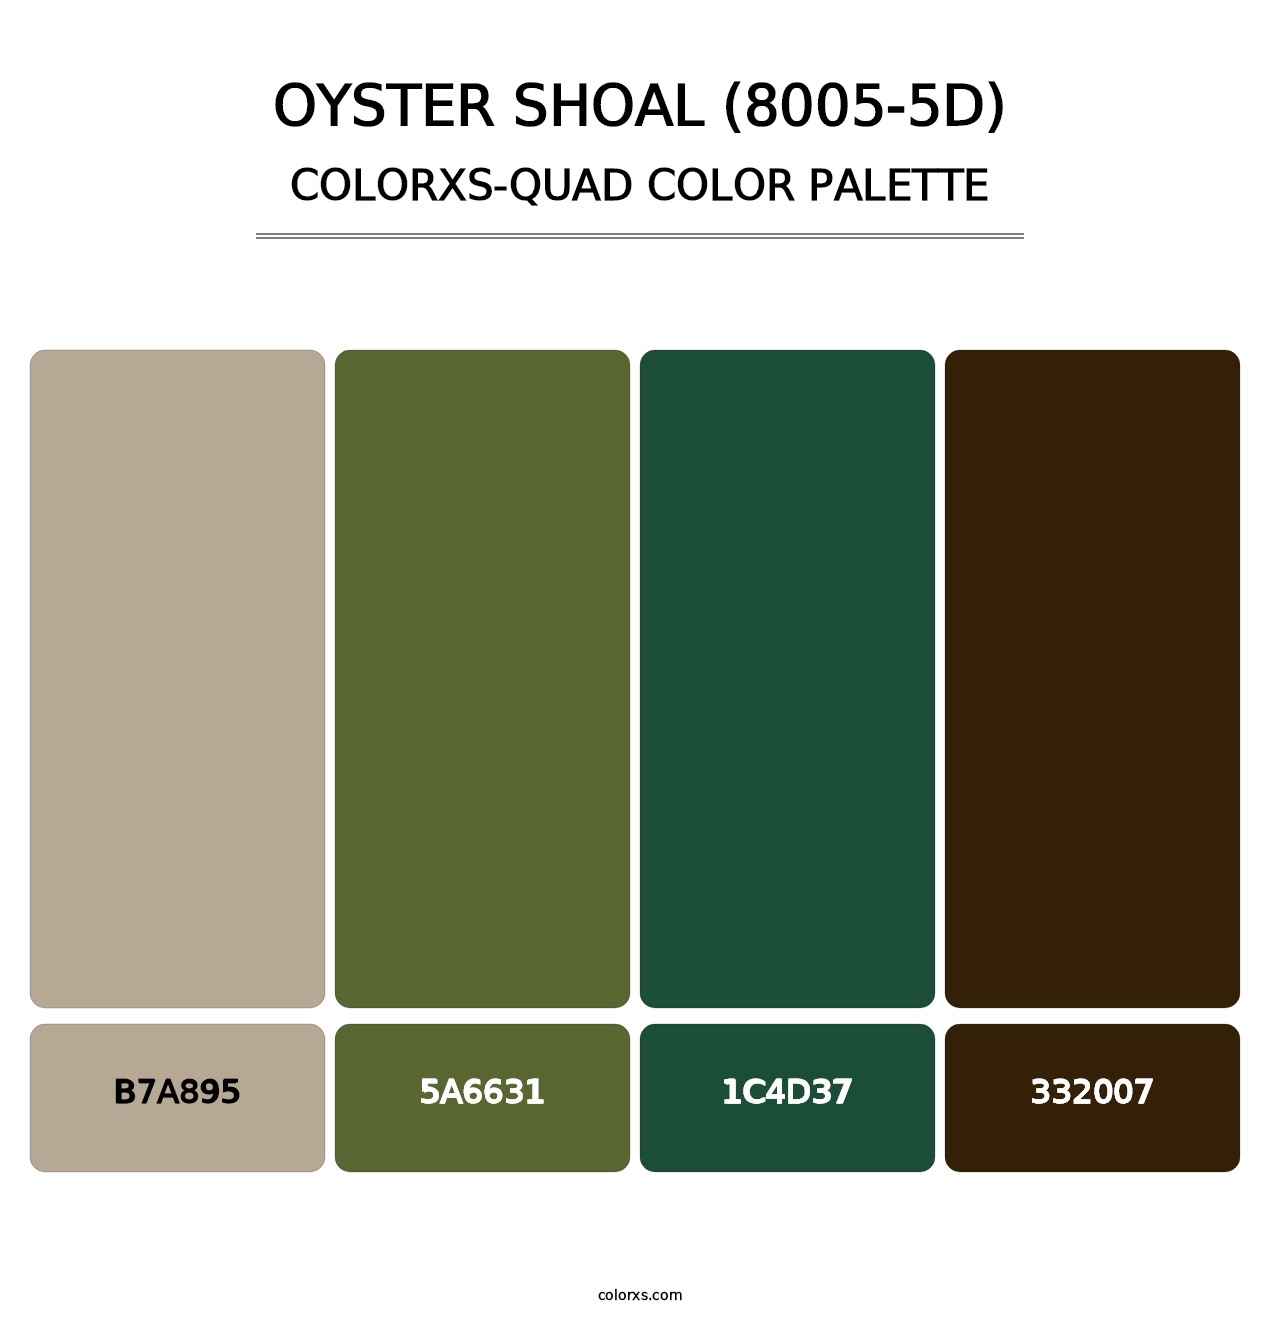 Oyster Shoal (8005-5D) - Colorxs Quad Palette